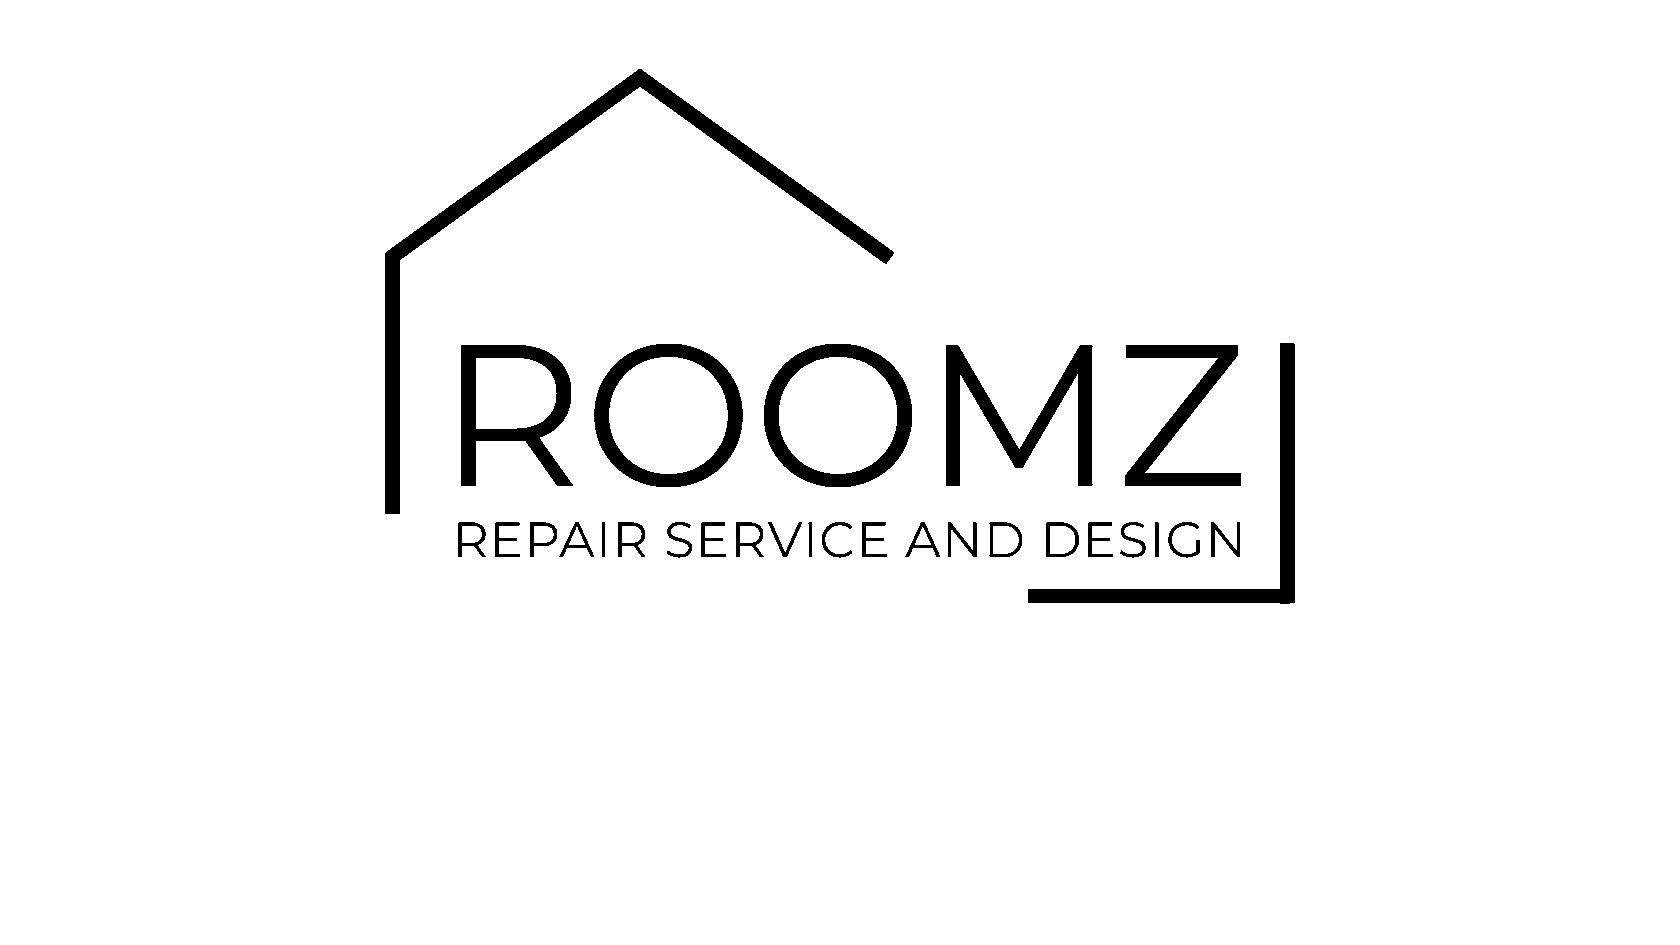  roomz 